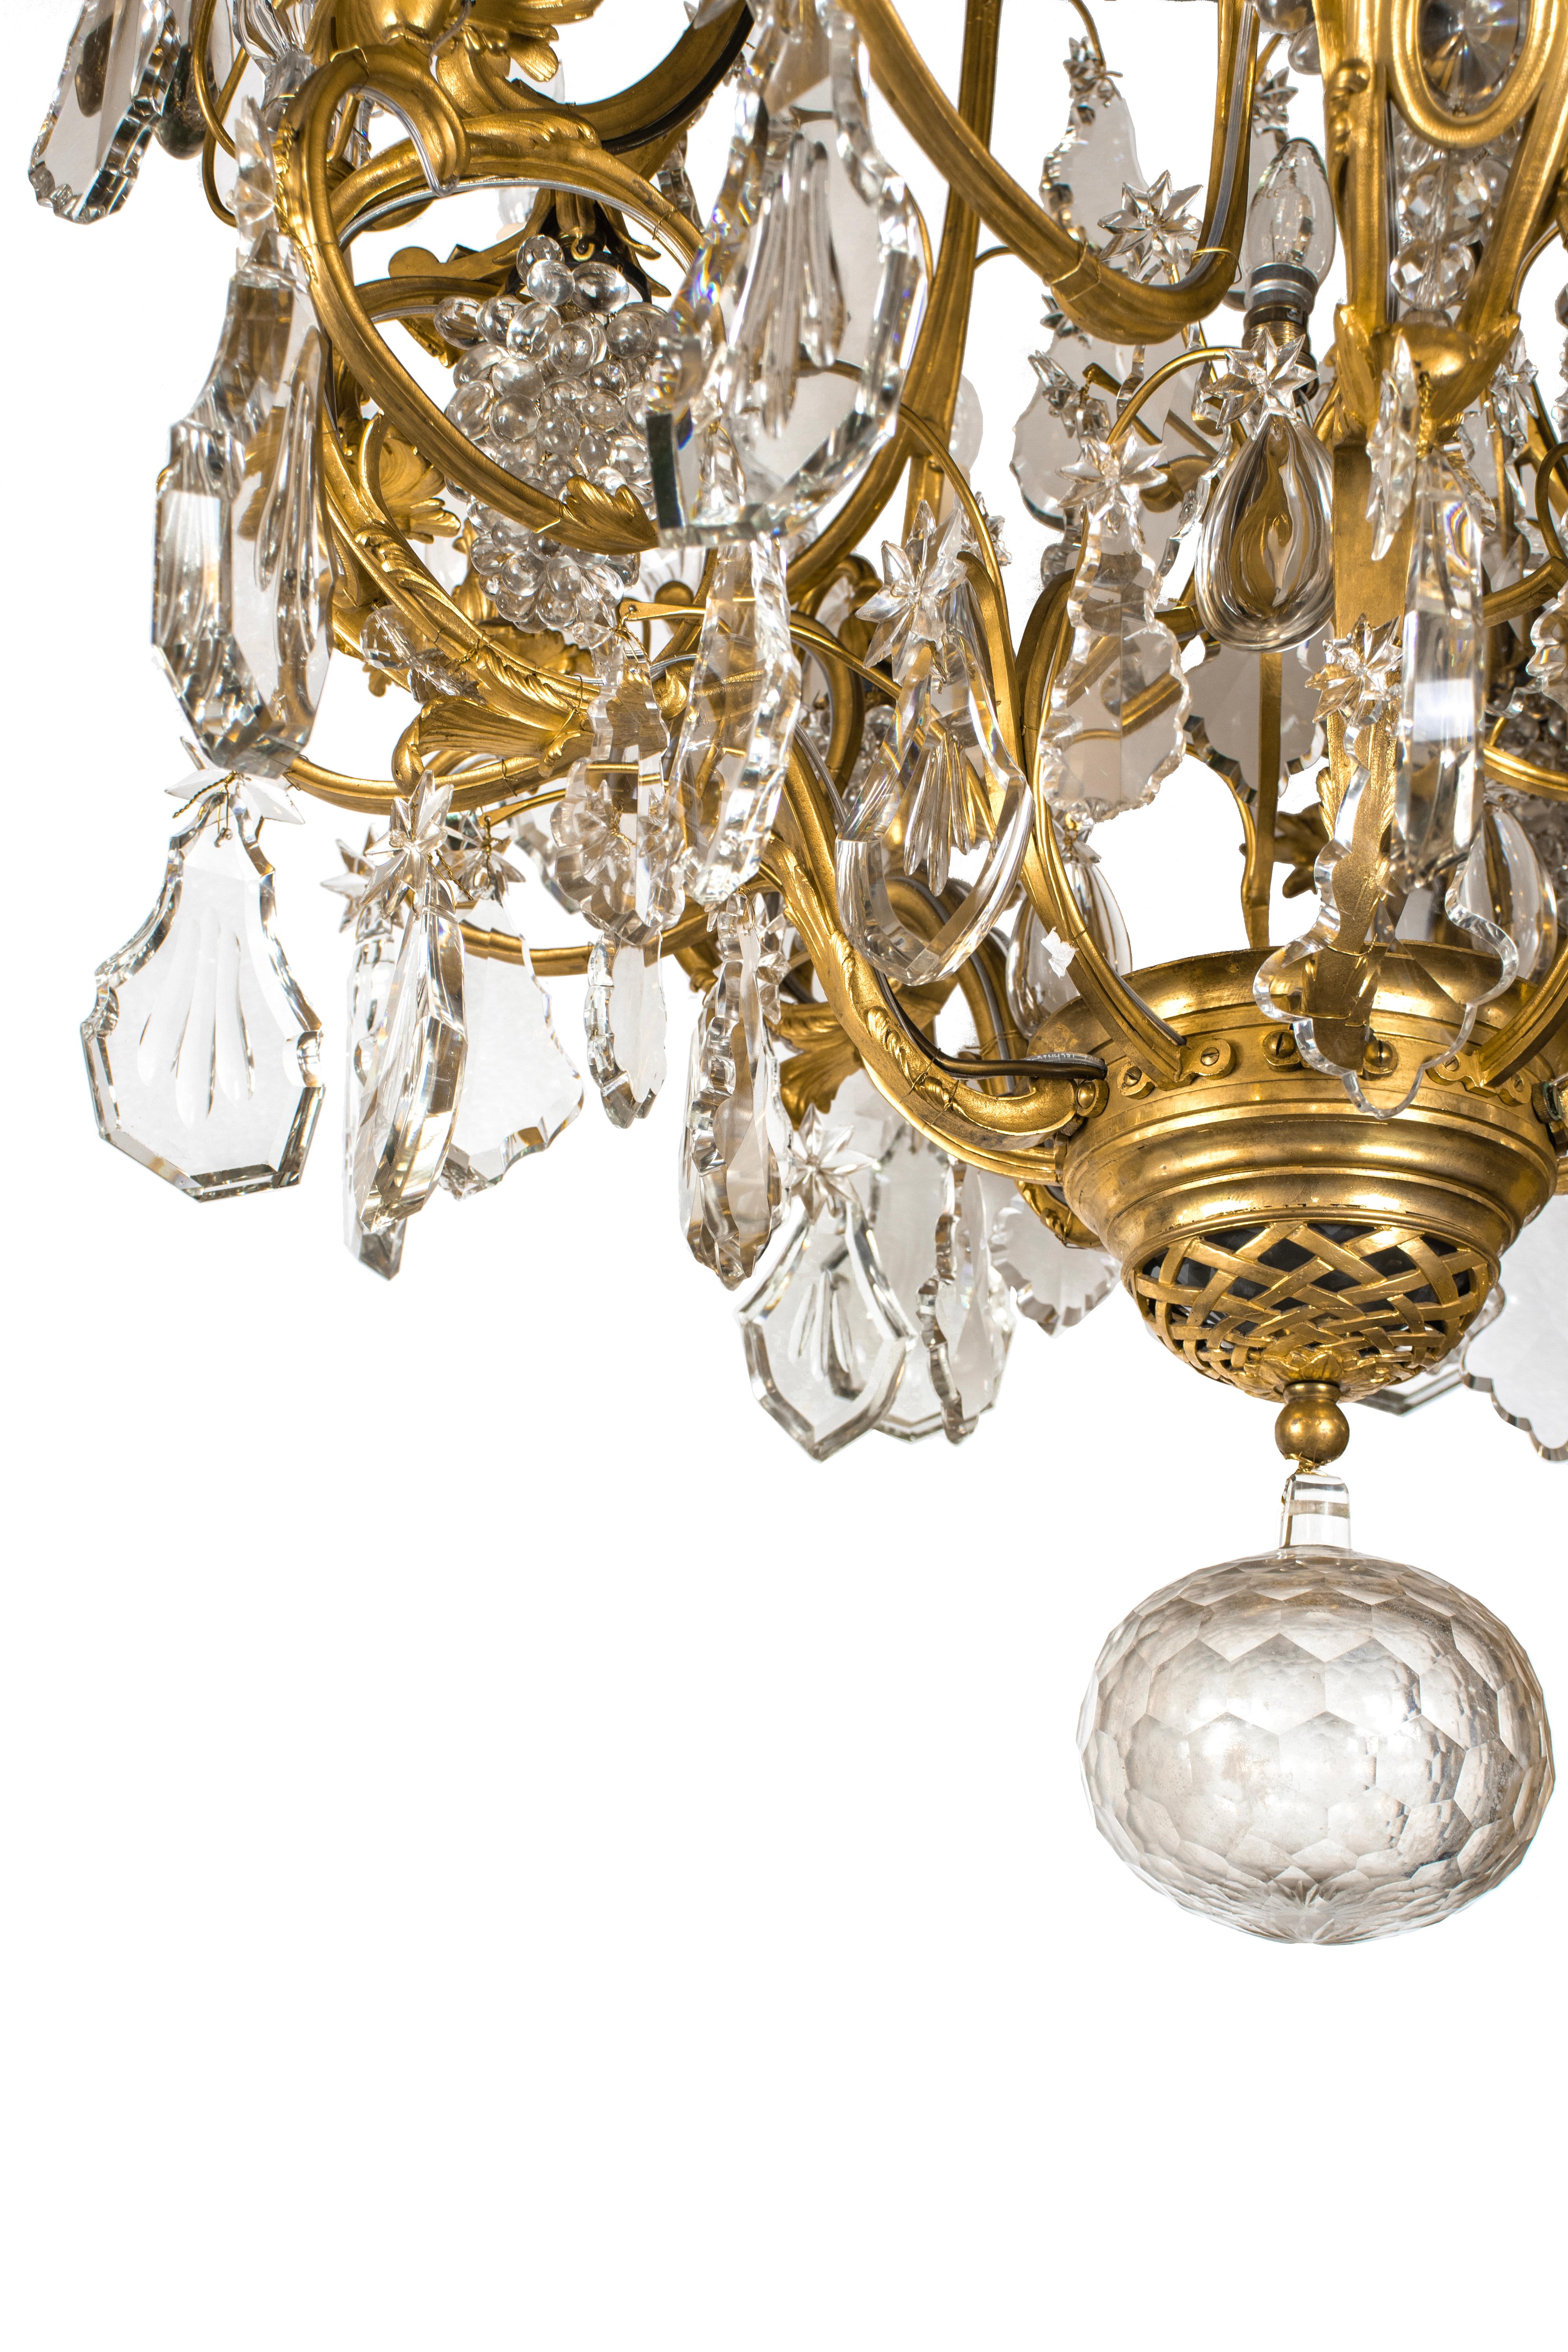 Un grand lustre en bronze doré de style Louis XV avec 10 lumières sur des branches à enroulement et une ampoule supplémentaire au centre. Décorée de cristaux surdimensionnés de formes diverses : étoiles, gouttes, rosettes, cônes, prismes incurvés et